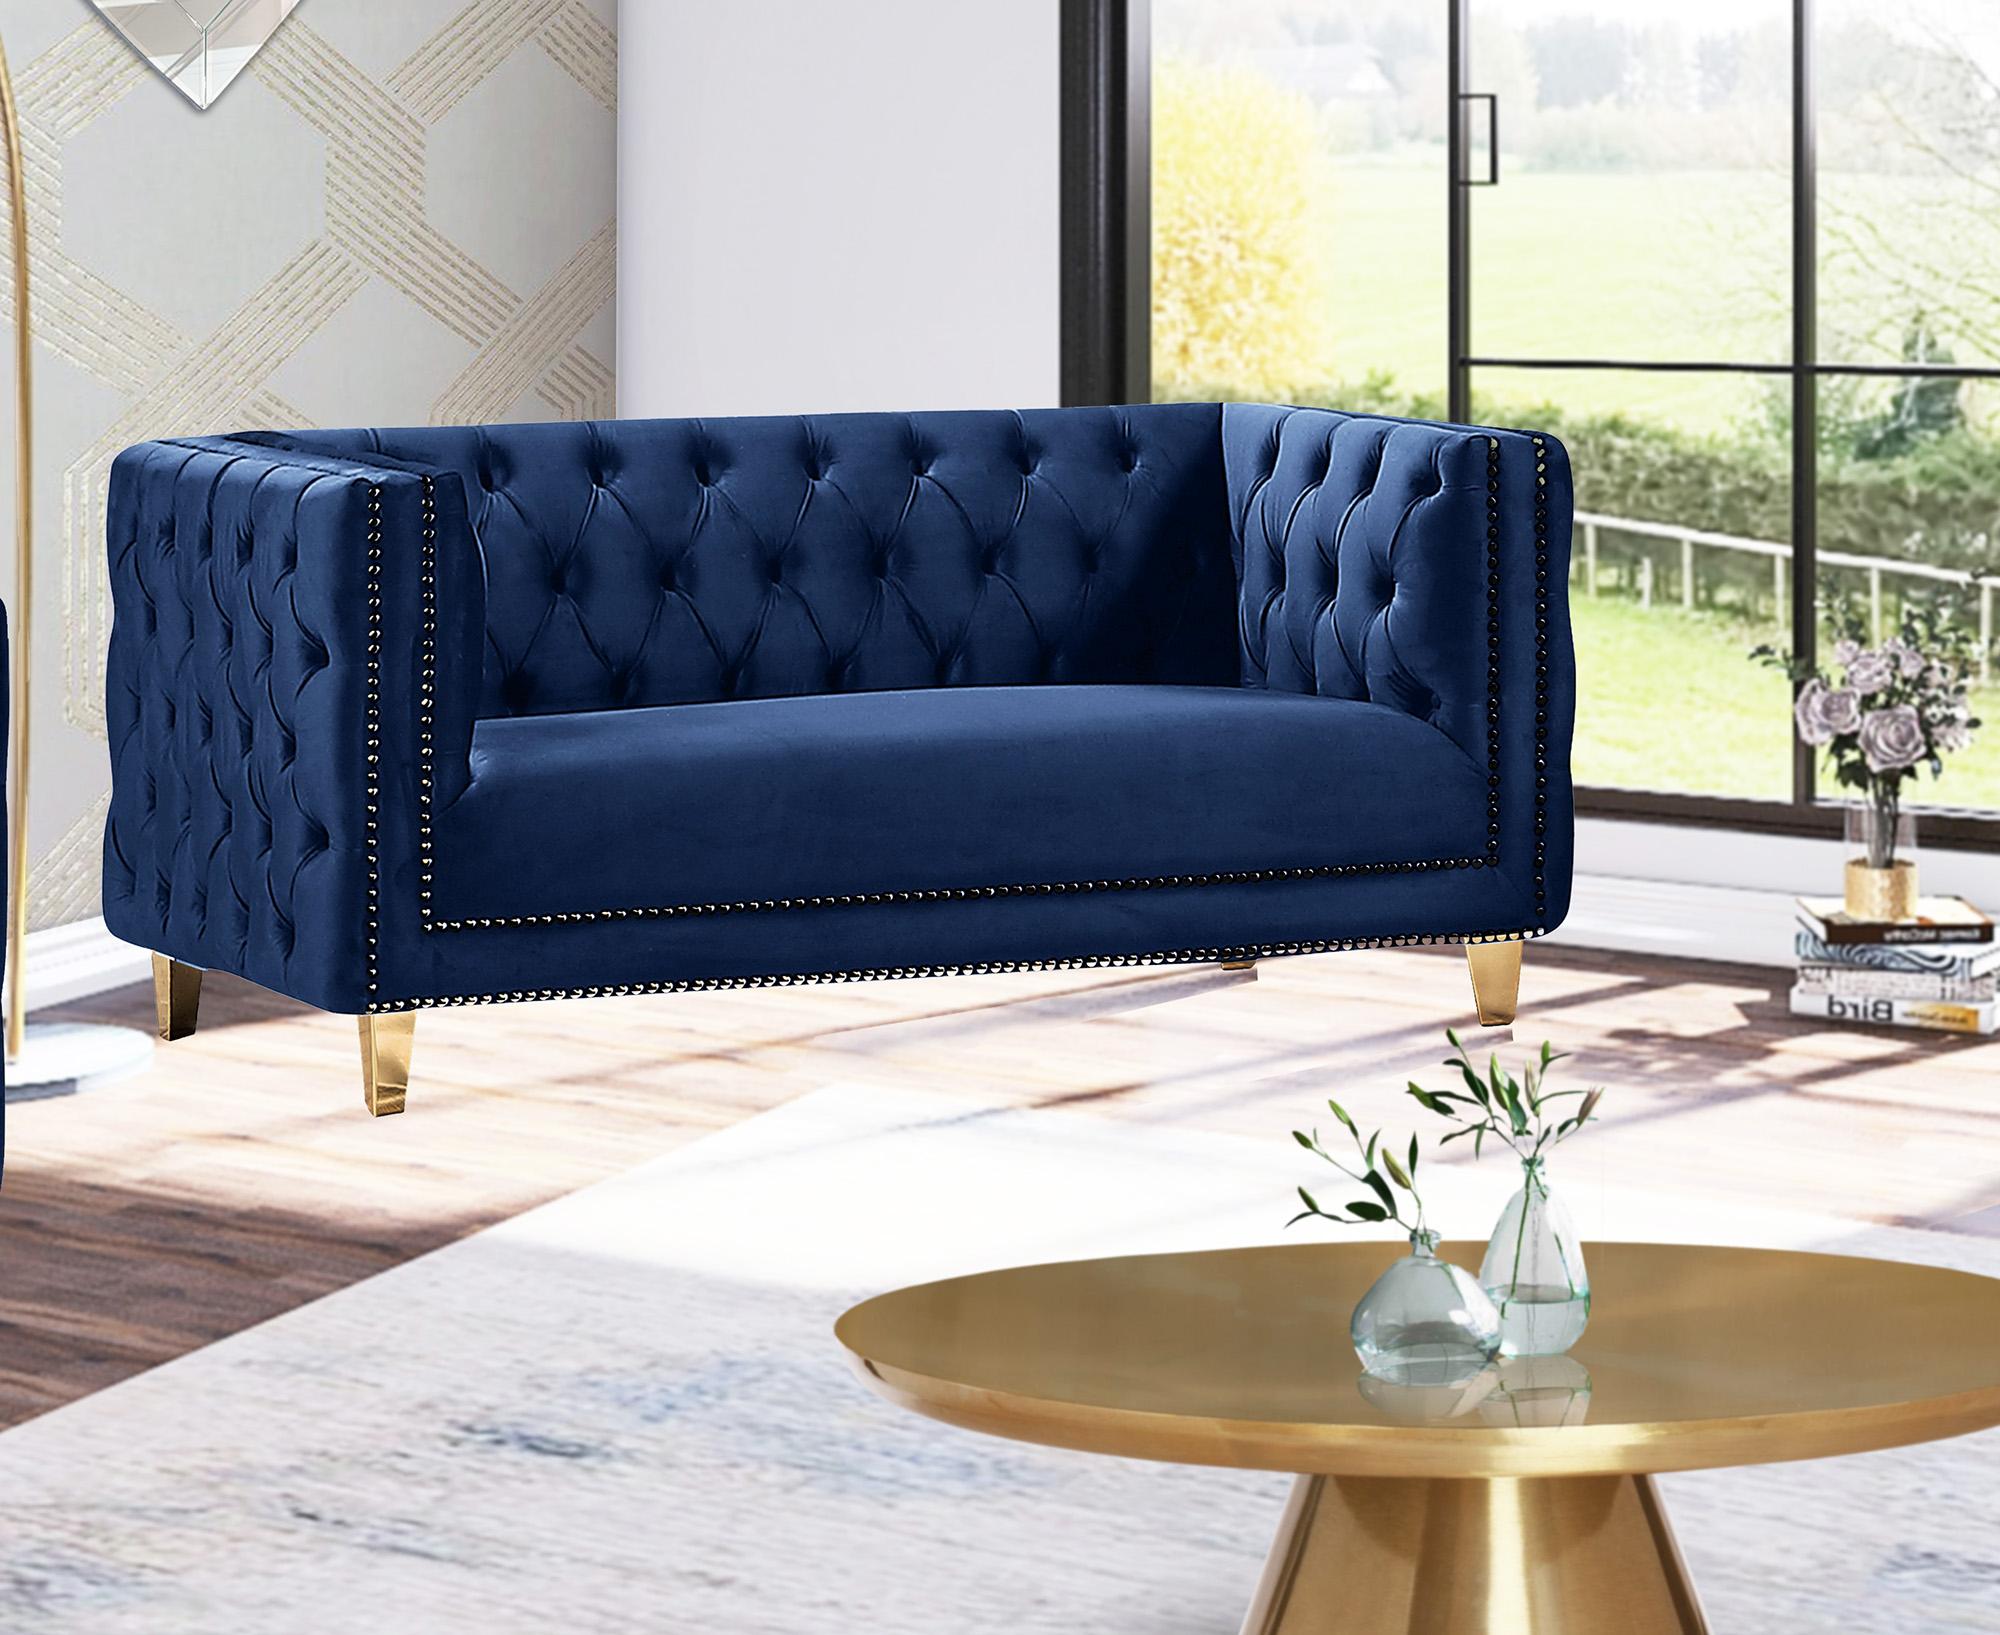 

    
Glam Navy Velvet Sofa Set 3Pcs MICHELLE 652Navy Meridian Contemporary Modern
